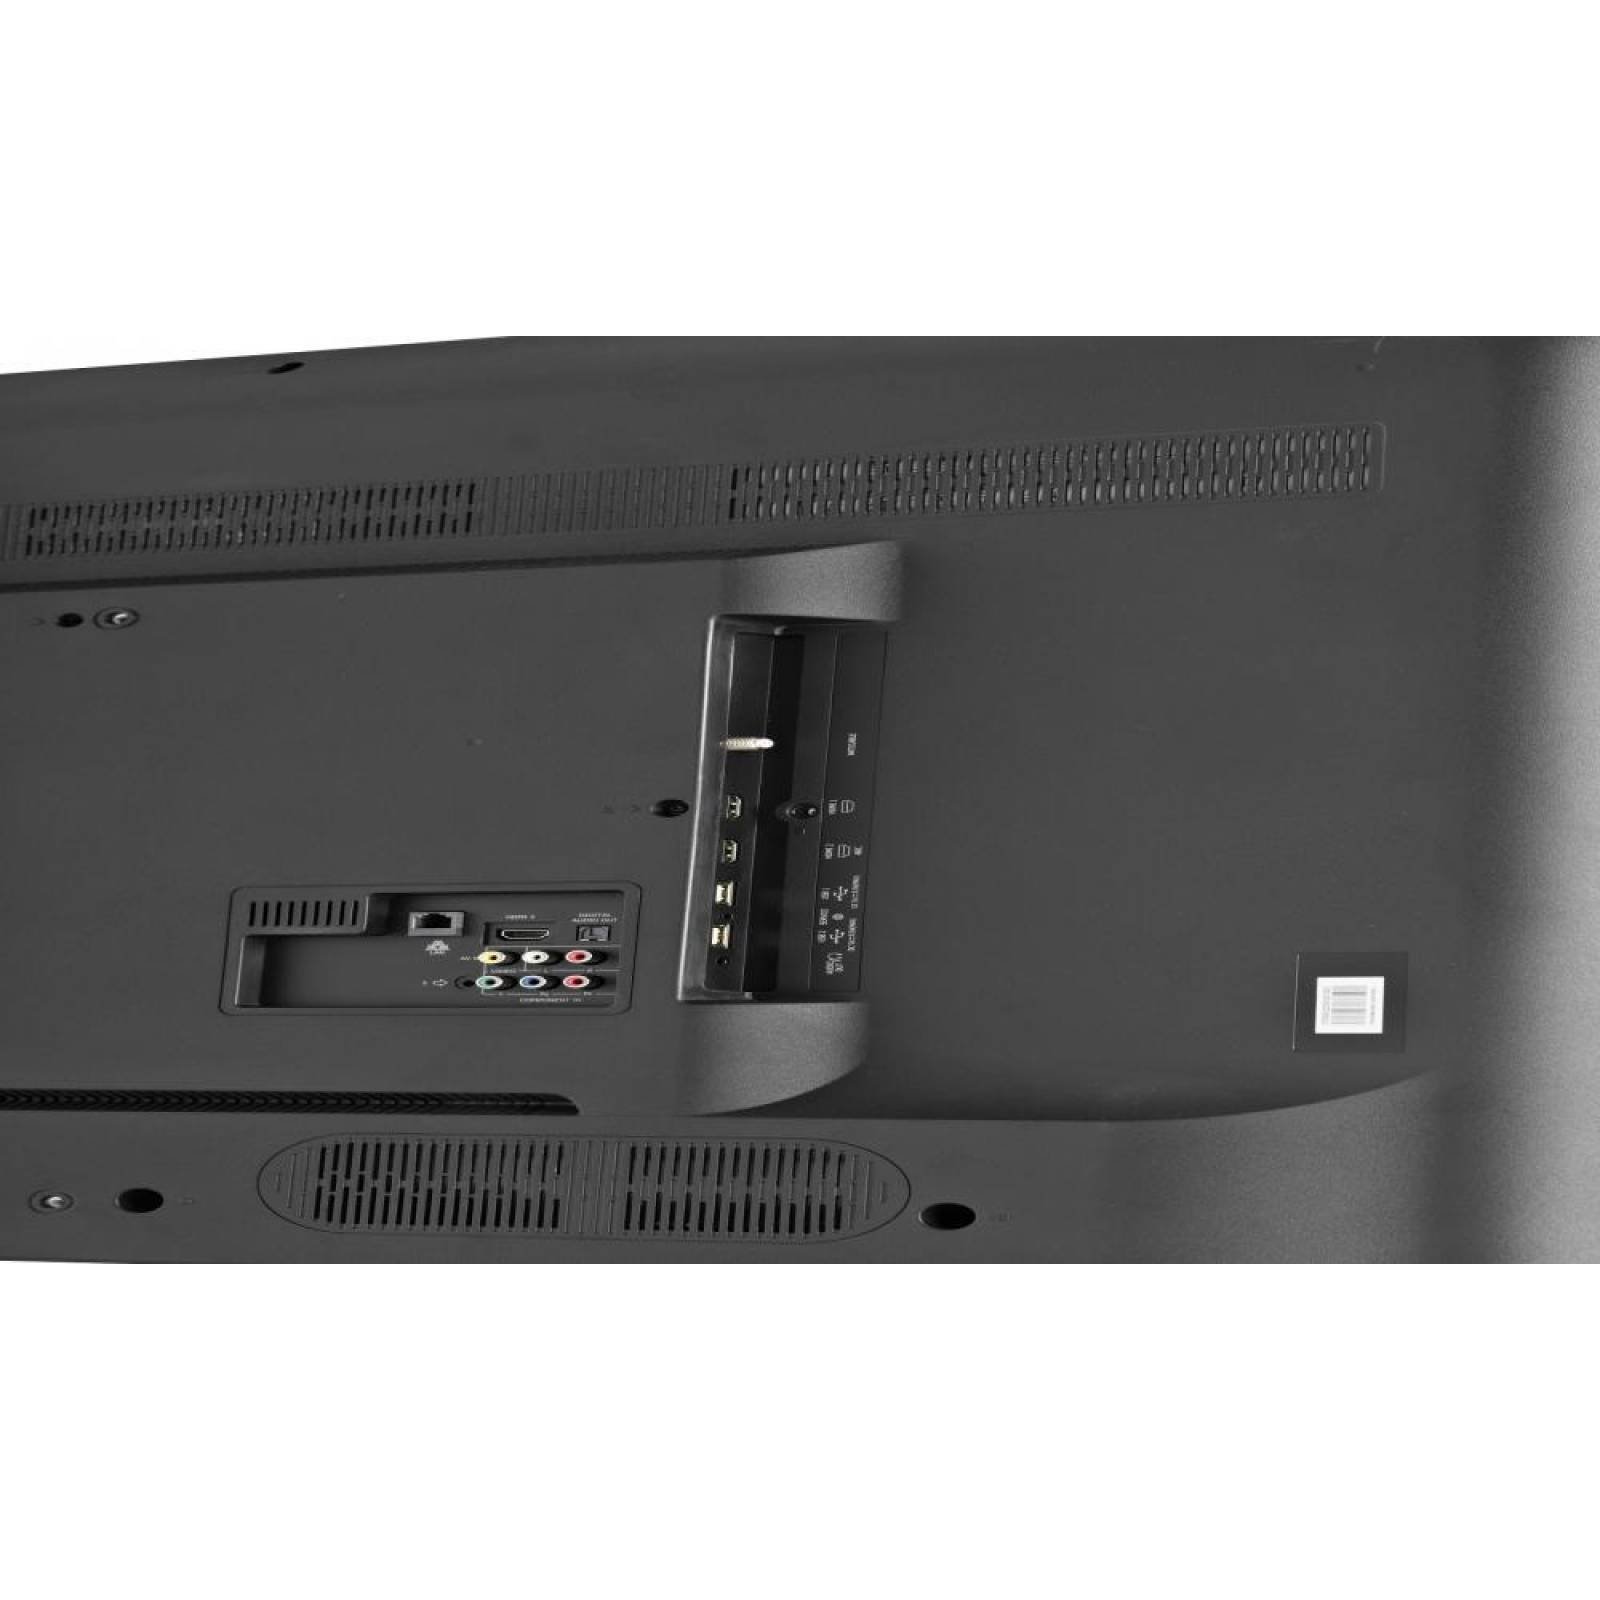 Smart TV Hisense 50H5D Led Full HD 50 Pulgadas